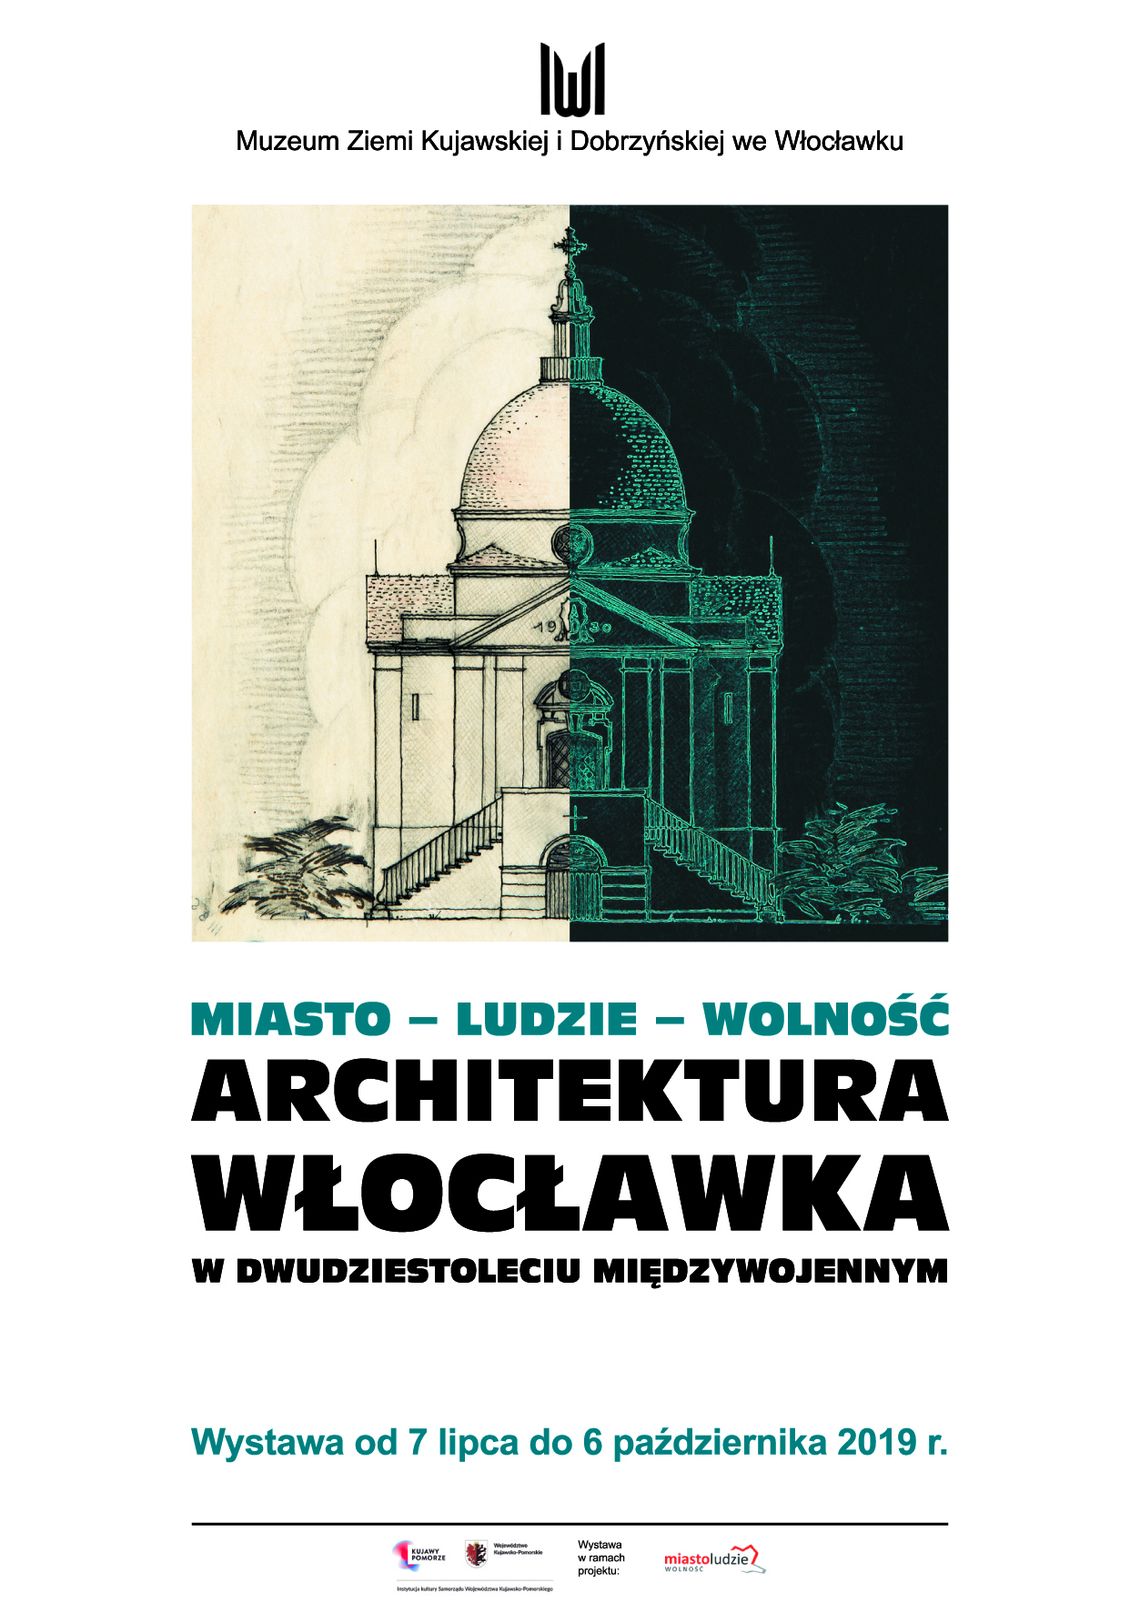 Muzeum zaprasza na wystawę: Architektura Włocławka w dwudziestoleciu międzywojennym